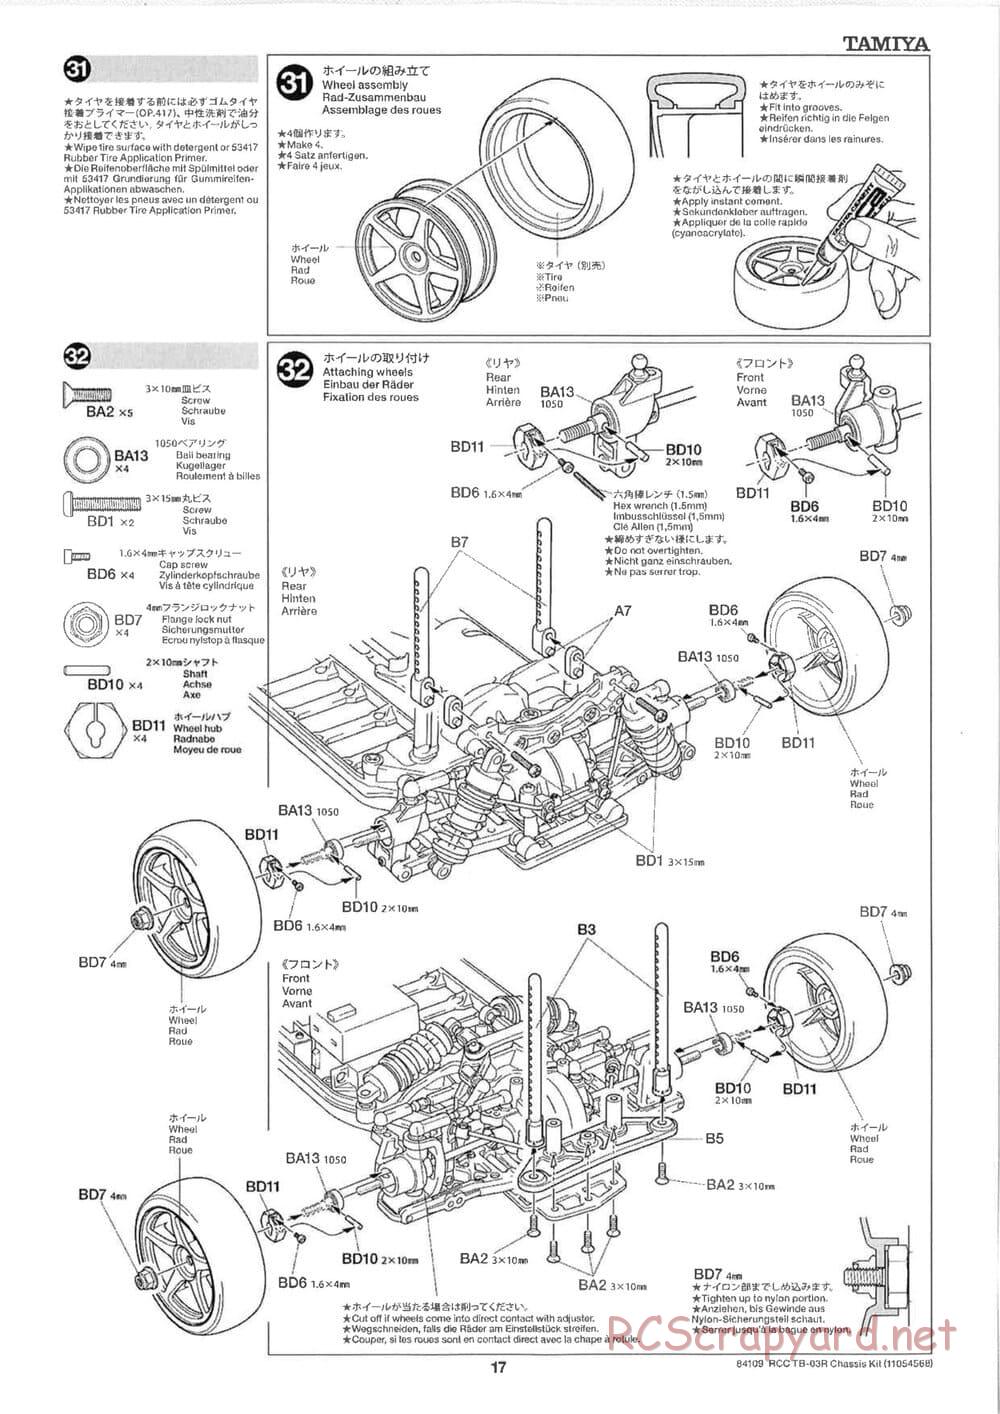 Tamiya - TB-03R Chassis - Manual - Page 17